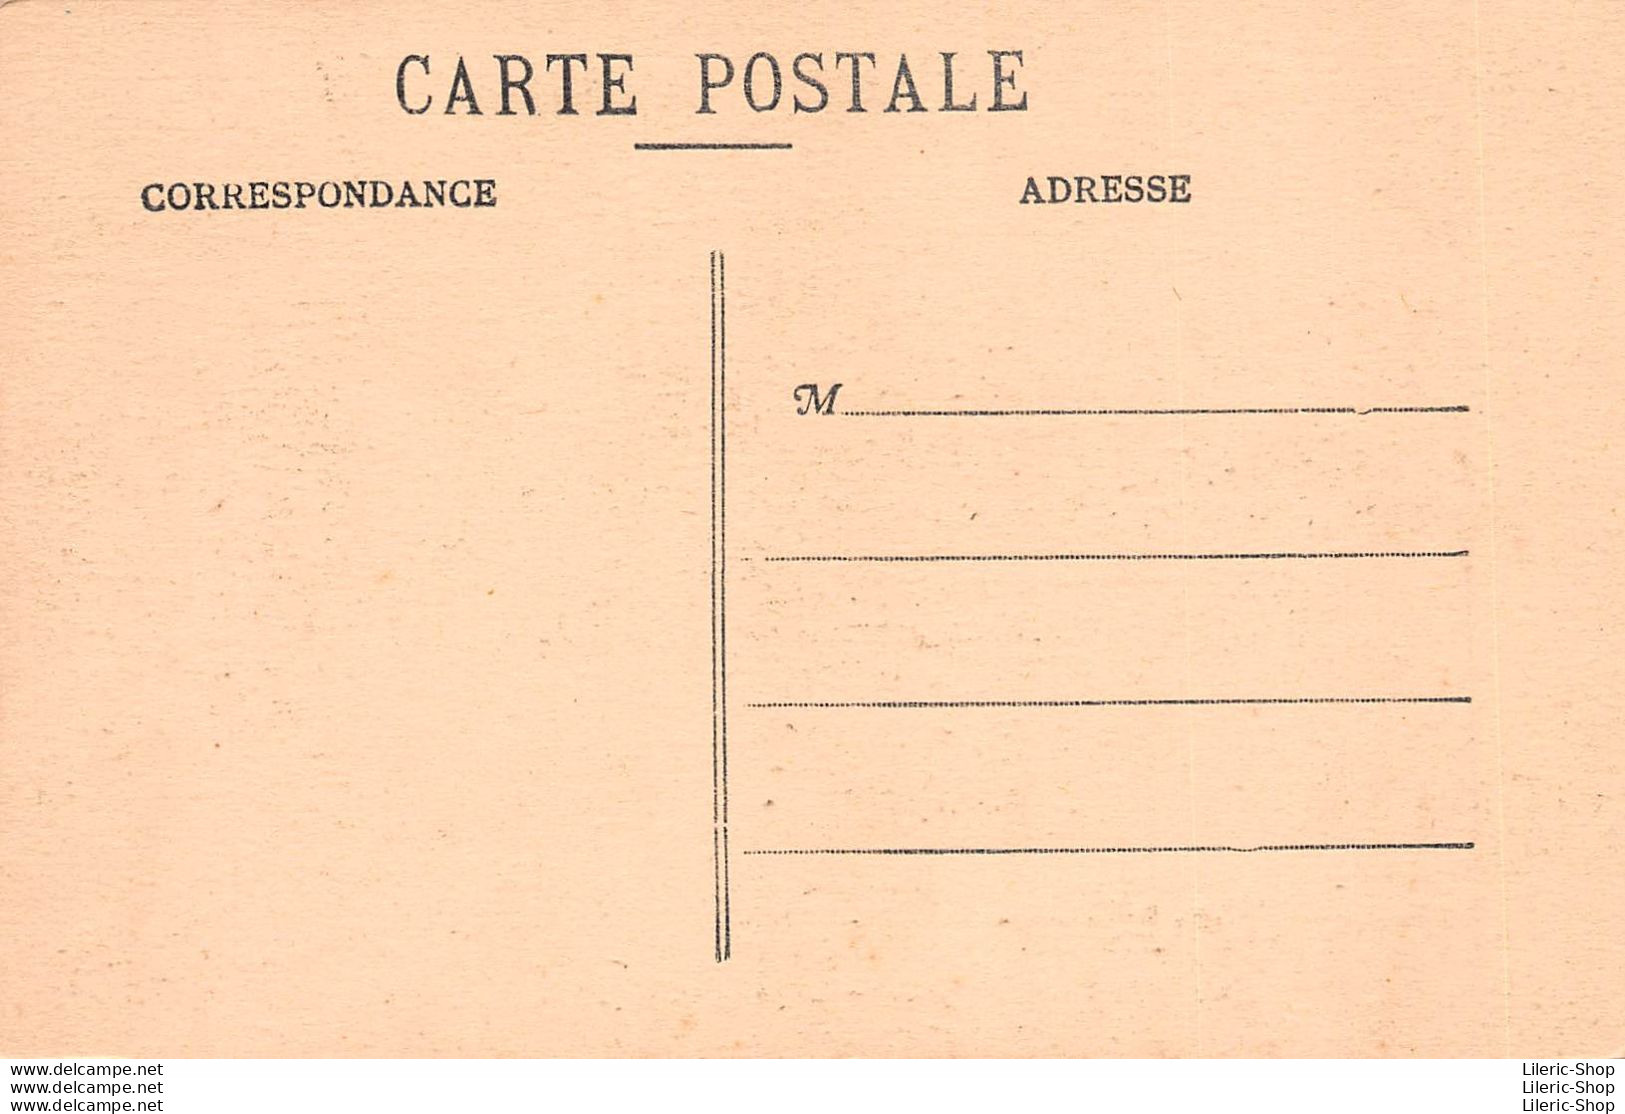 CAPBRETON (40 ) Cpa ± 1930 Sous L'Estacade - Personnage Travaillant - Phototypie DELBOY (Marcel)  à Bordeaux - Capbreton